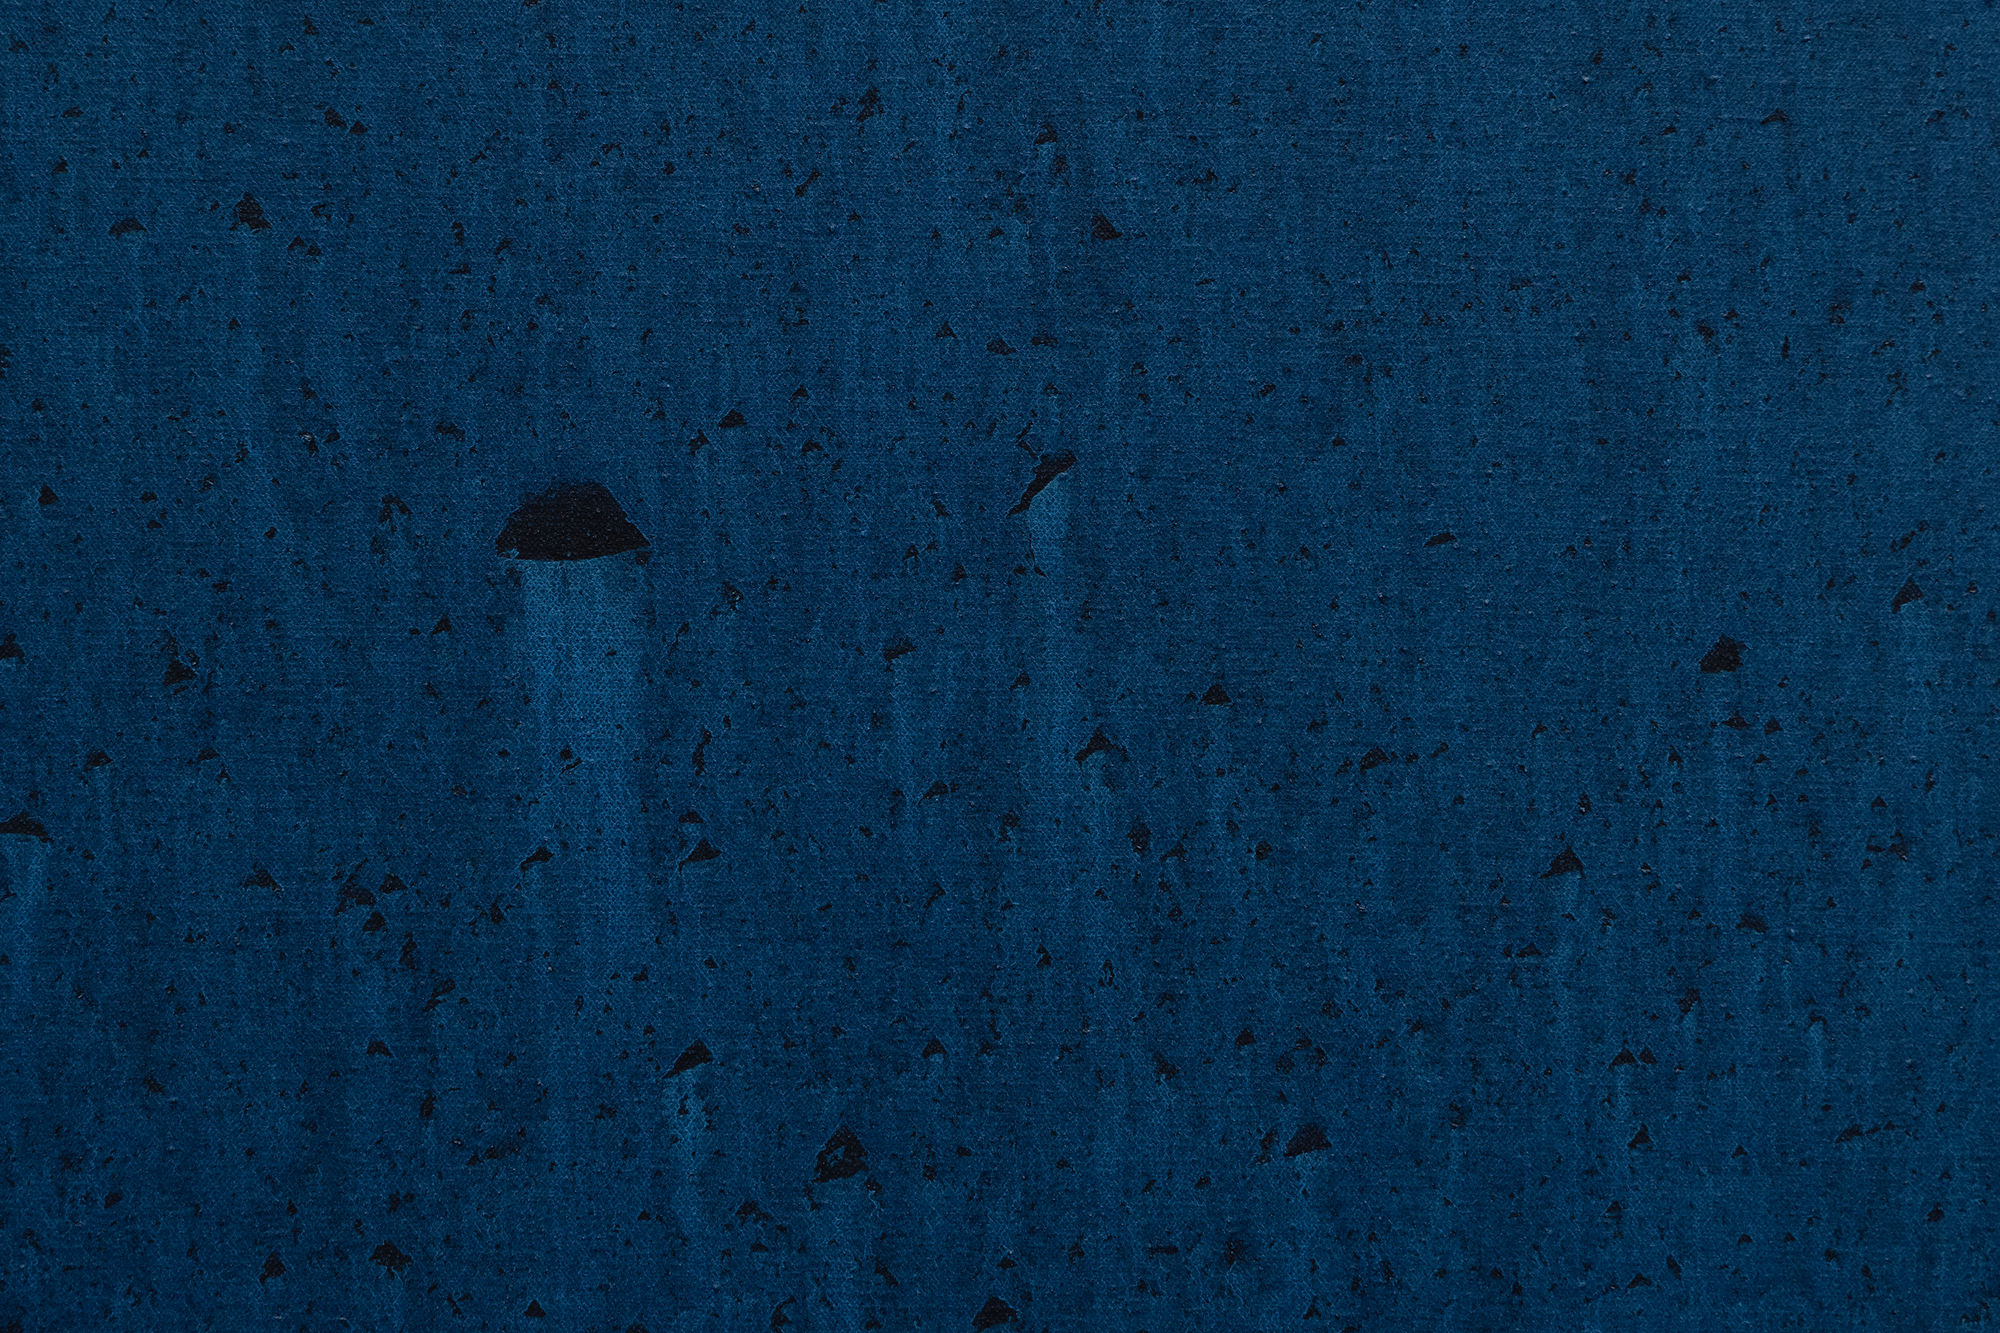 في وقت مبكر من نضجها ، أثبتت هود نفسها كفنانة للصور المشحونة ميتافيزيقيا التي انخرطت في مختلف علم الكونيات عند عودتها إلى هيوستن في عام 1962. بلو ووترز هي من بين تلك الأعمال التي تعكس بحثها المستمر عن القوت الروحي. يصل شريط من اللون الأزرق المشبع غير الشفاف إلى الأمام في كرة من اللون الأزرق السماوي الباهت ، تذكرنا بكرة أرضية مائية. يشبه هذا التدخل الجريء والمتناغم ذراعا أثيريا يحول حالة سائلة إلى أخضر فثالو فسفوري ساحر ، وبذخه وتألقه المتدفق يوحي بالتدخل الإلهي الذي يستحضر استعارة &quot;يد الله&quot; ، ويحرك جوهر الحياة. غالبا ما يدعو استخدام هود البارع للون والشكل إلى تفسيرات لاحتضان كوني أو روحي داخل العالم الطبيعي. ومع ذلك ، فإن غسلها الرقيق للون المصبوب لا يظهر العشوائية أو عدم اليقين ولكن إتقانها الرائع وسيطرتها التي تضيف عنصرا آخر من الرهبة إلى Blue Waters.